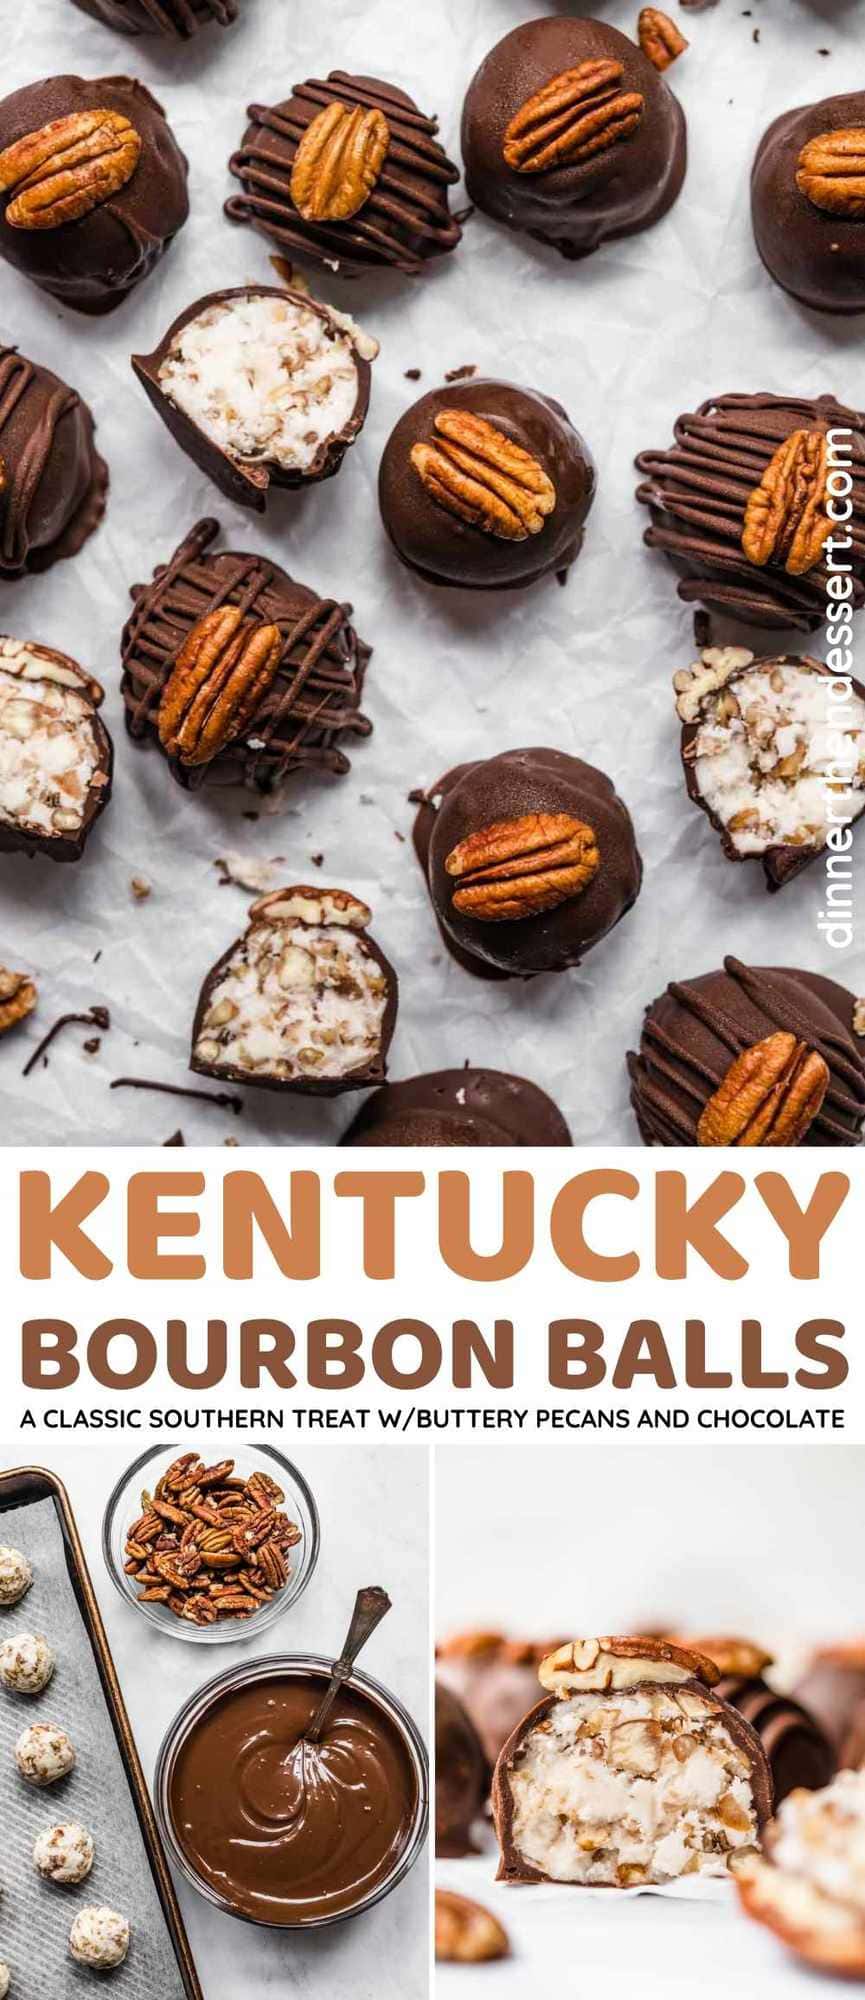 https://dinnerthendessert.com/wp-content/uploads/2021/01/Kentucky-Bourbon-Balls-L.jpg